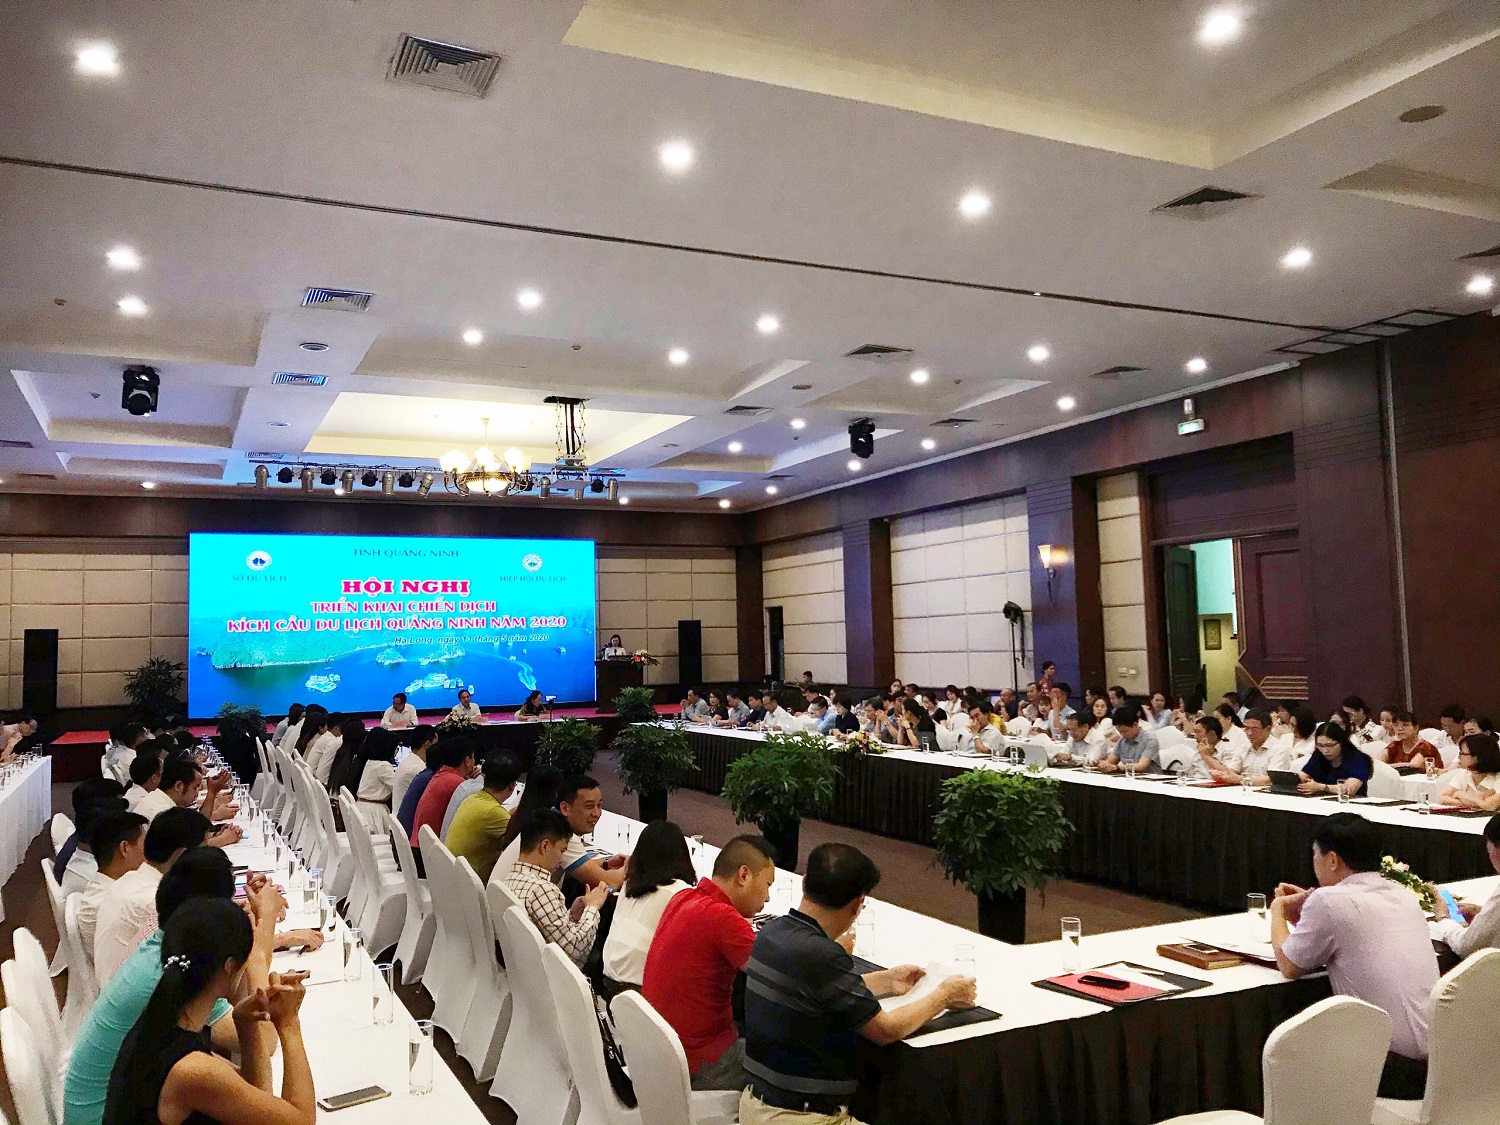 Hội nghị triển khai chiến dịch kích cầu du lịch Quảng Ninh năm 2020 với sự tham gia của gần 200 đại biểu từ các sở, ngành, địa phương, hiệp hội du lịch, cơ sở kinh doanh du lịch và dịch vụ lưu trú trên địa bàn tỉnh.